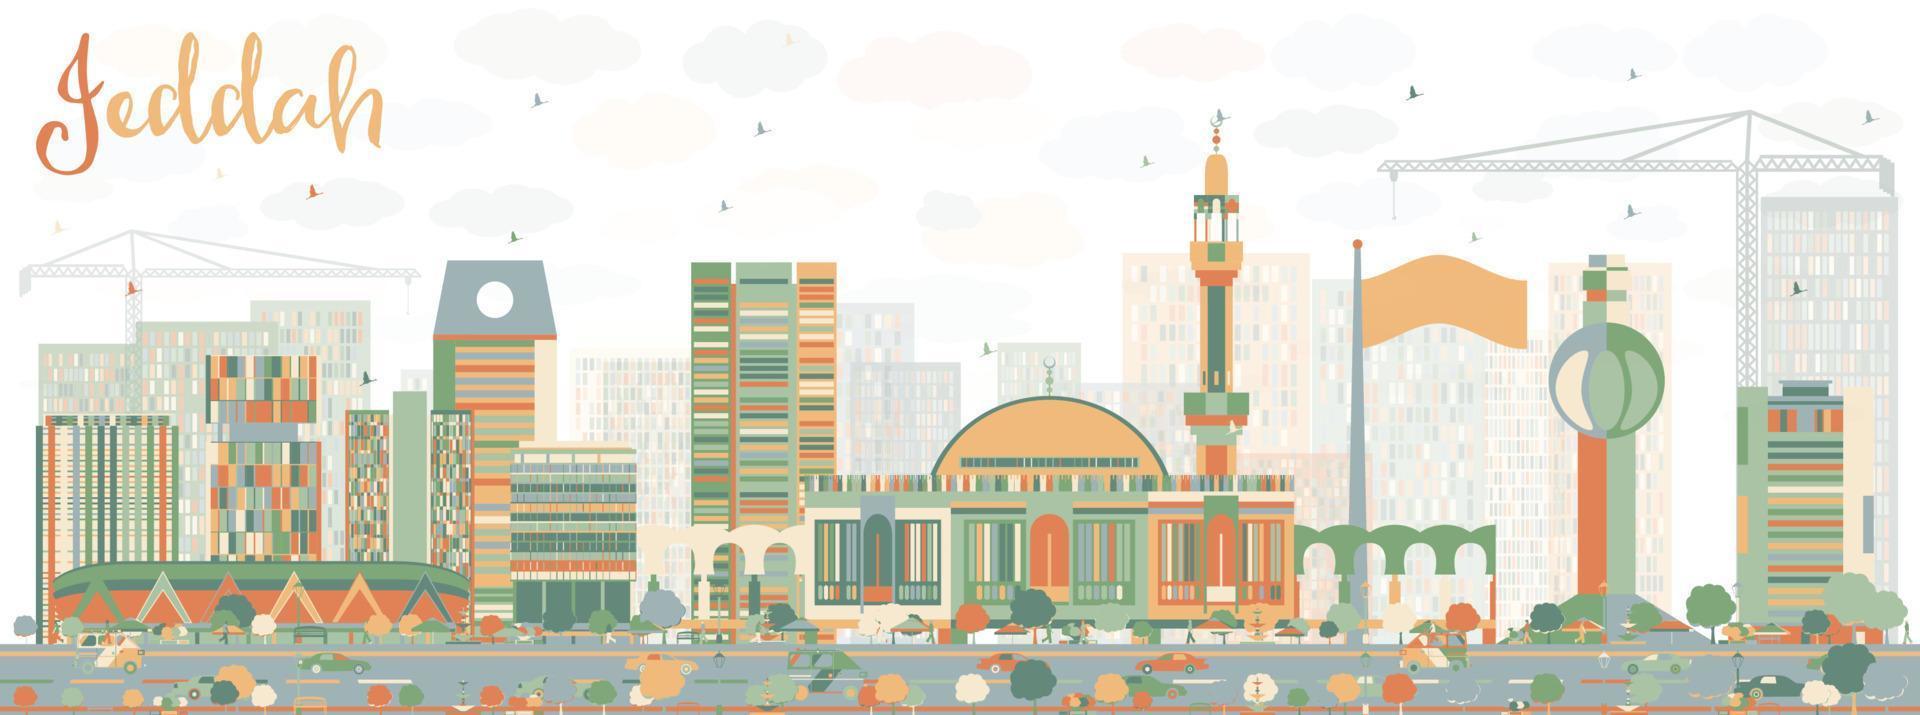 abstracte skyline van jeddah met kleur gebouwen. vector